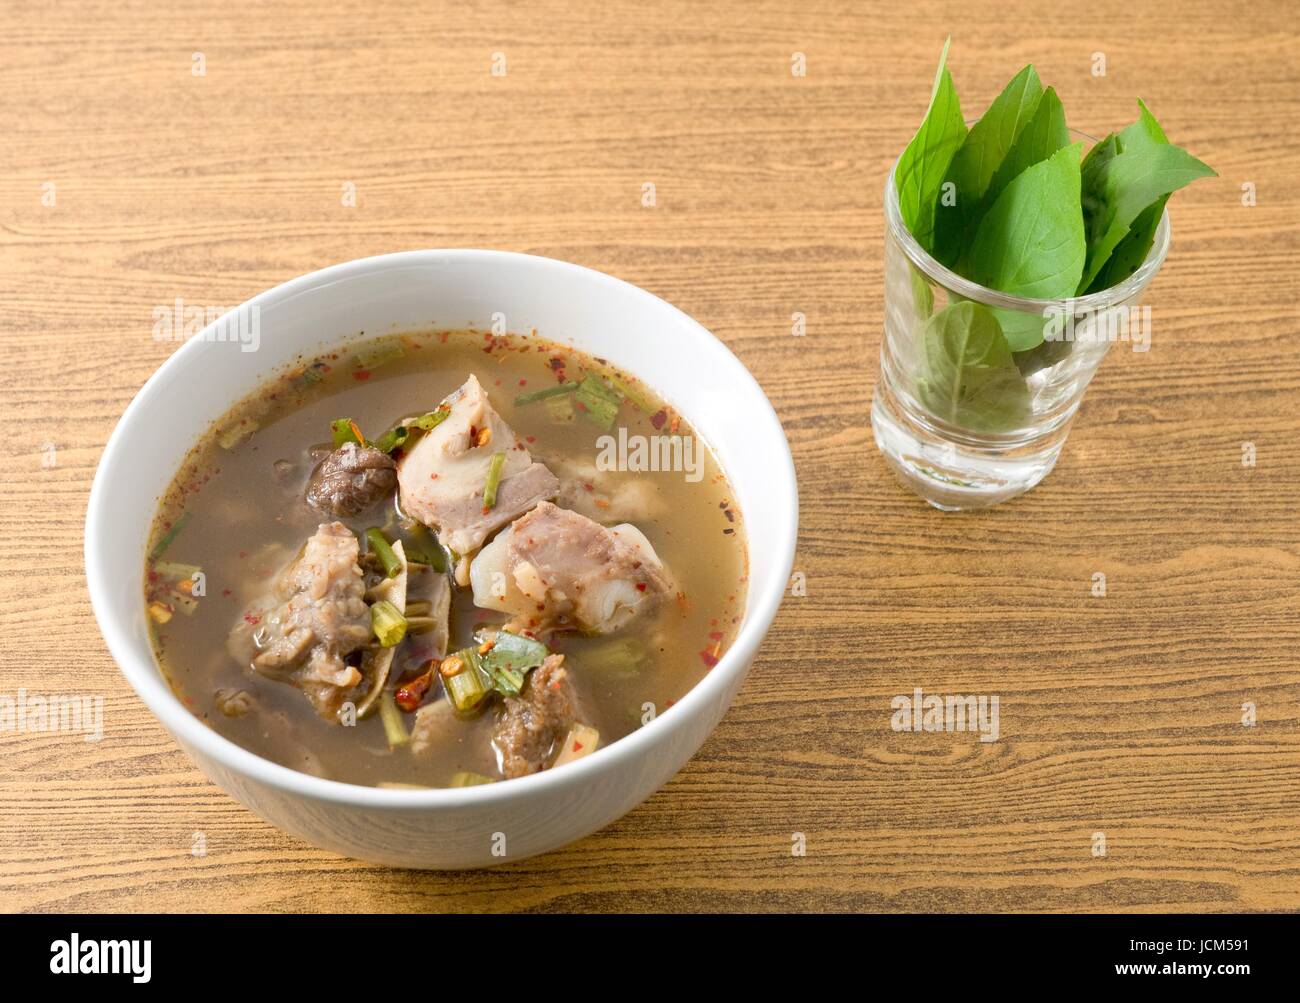 Cucina tailandese e cibo, una ciotola di Chiara piccante e aspro zuppa con le interiora dei bovini. Foto Stock